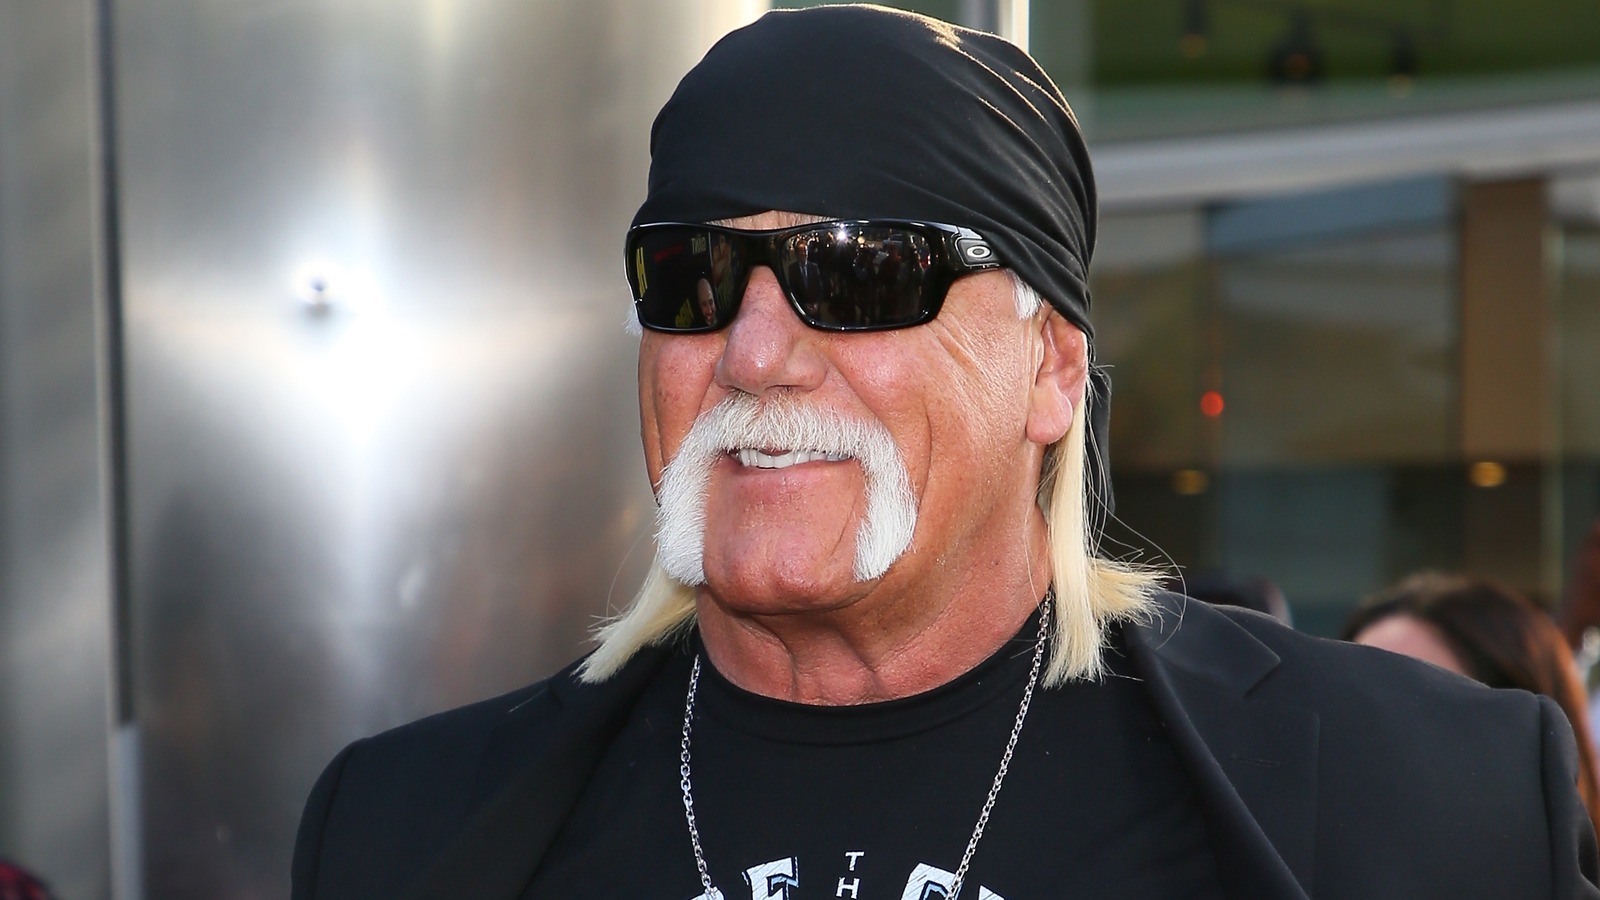 El miembro del Salón de la Fama de la WWE, Hulk Hogan, describe el 'círculo vicioso' de la adicción a las pastillas recetadas